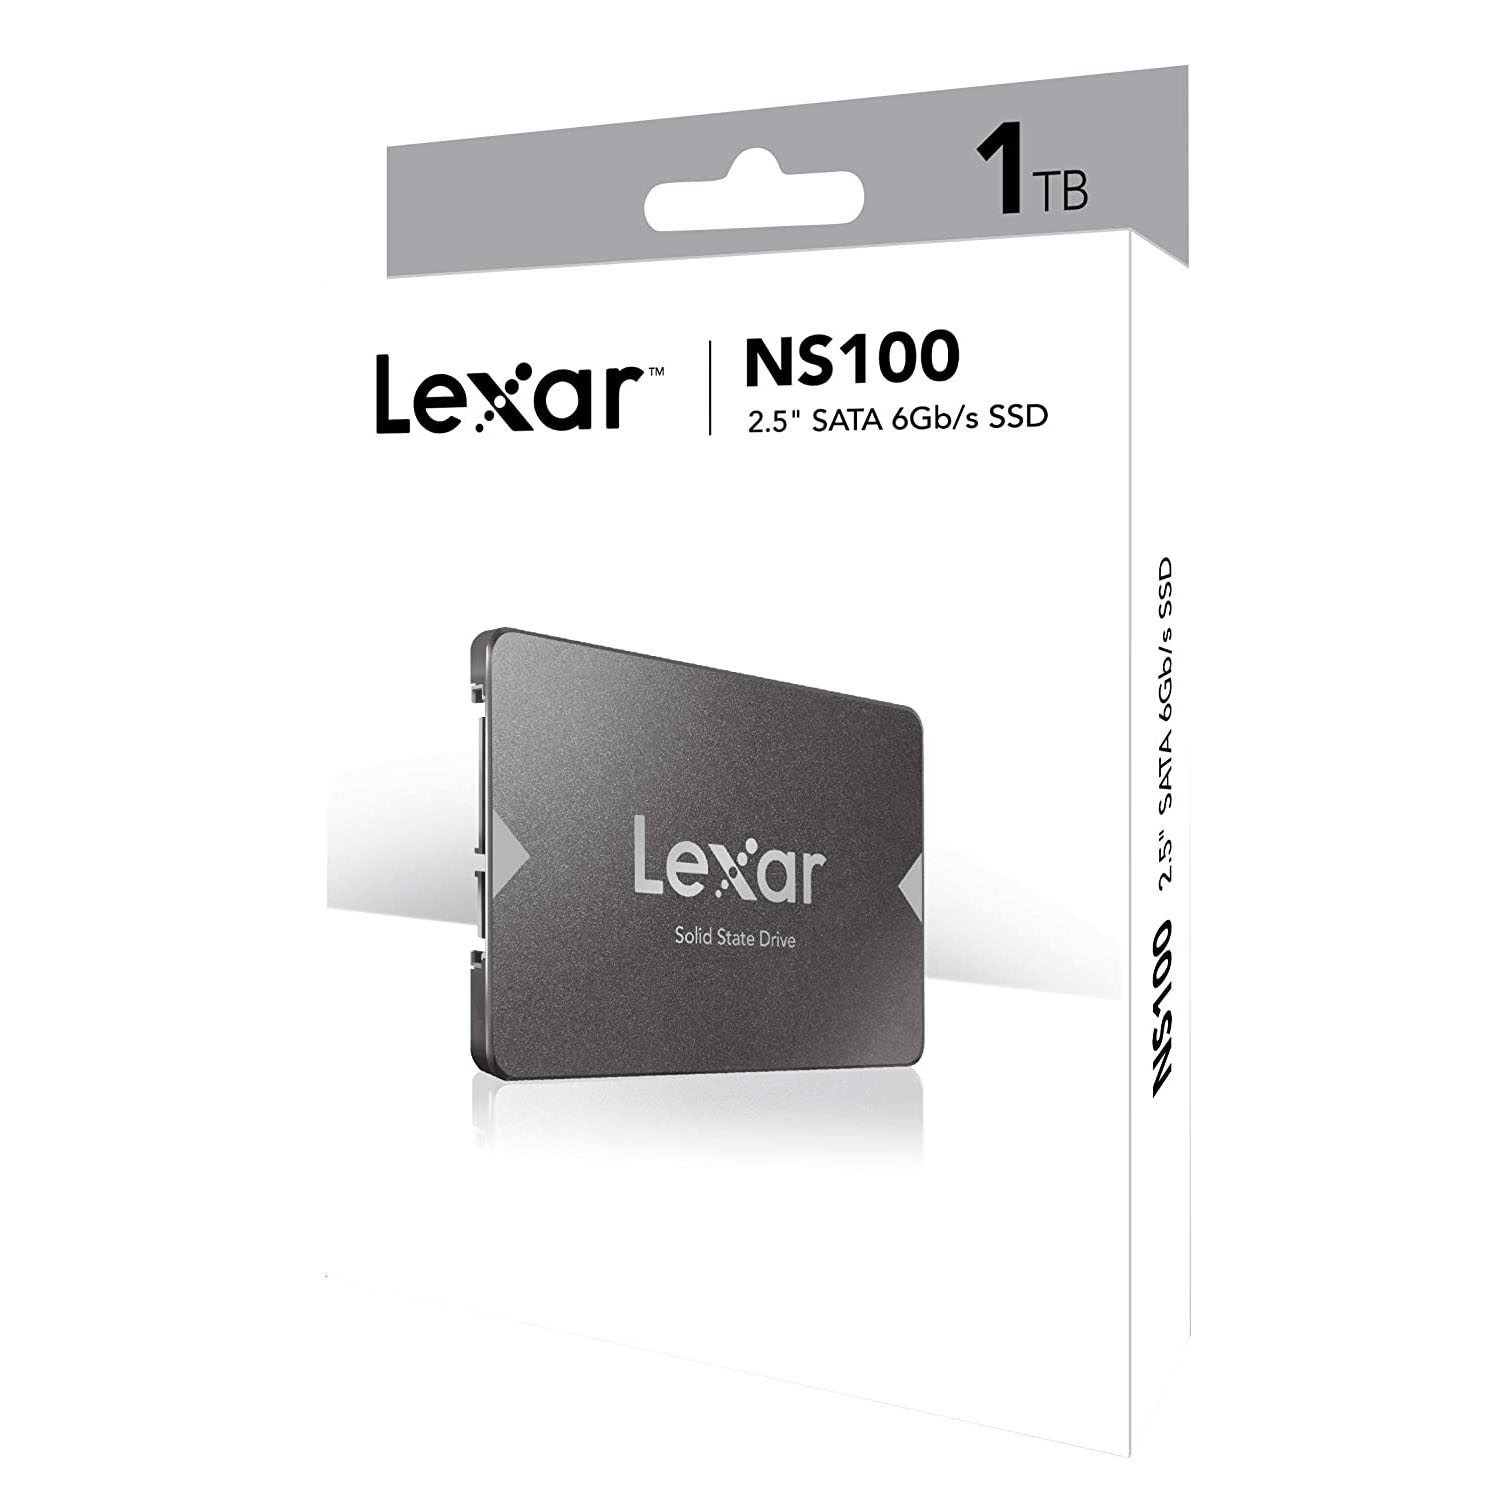 حافظه اس اس دی Lexar NS100 1TB-3